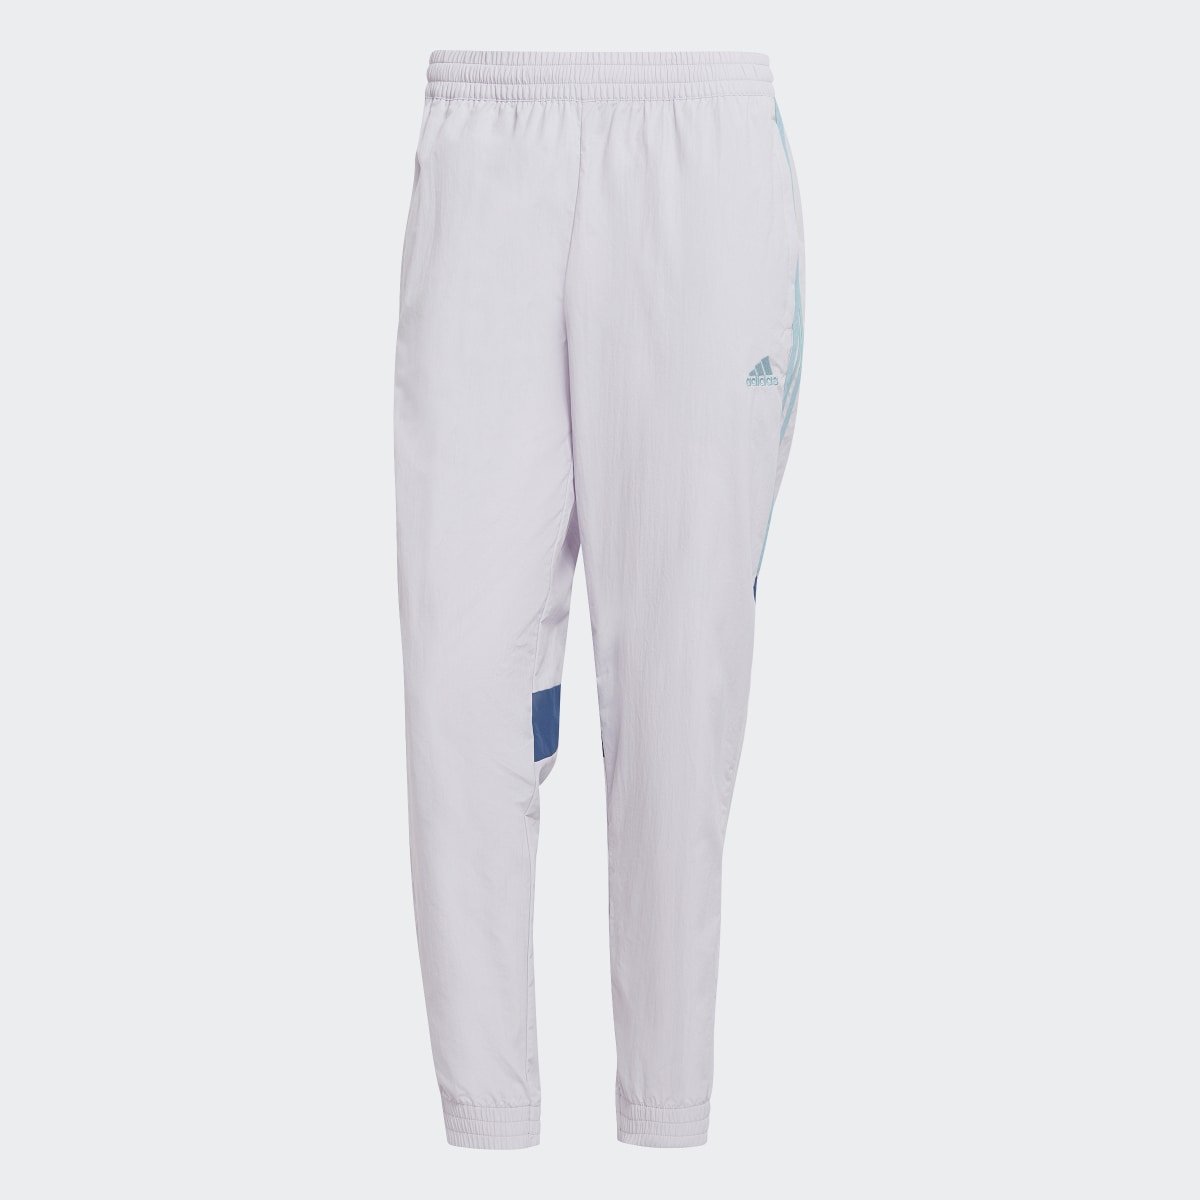 Adidas Pantalon Tiro. 4